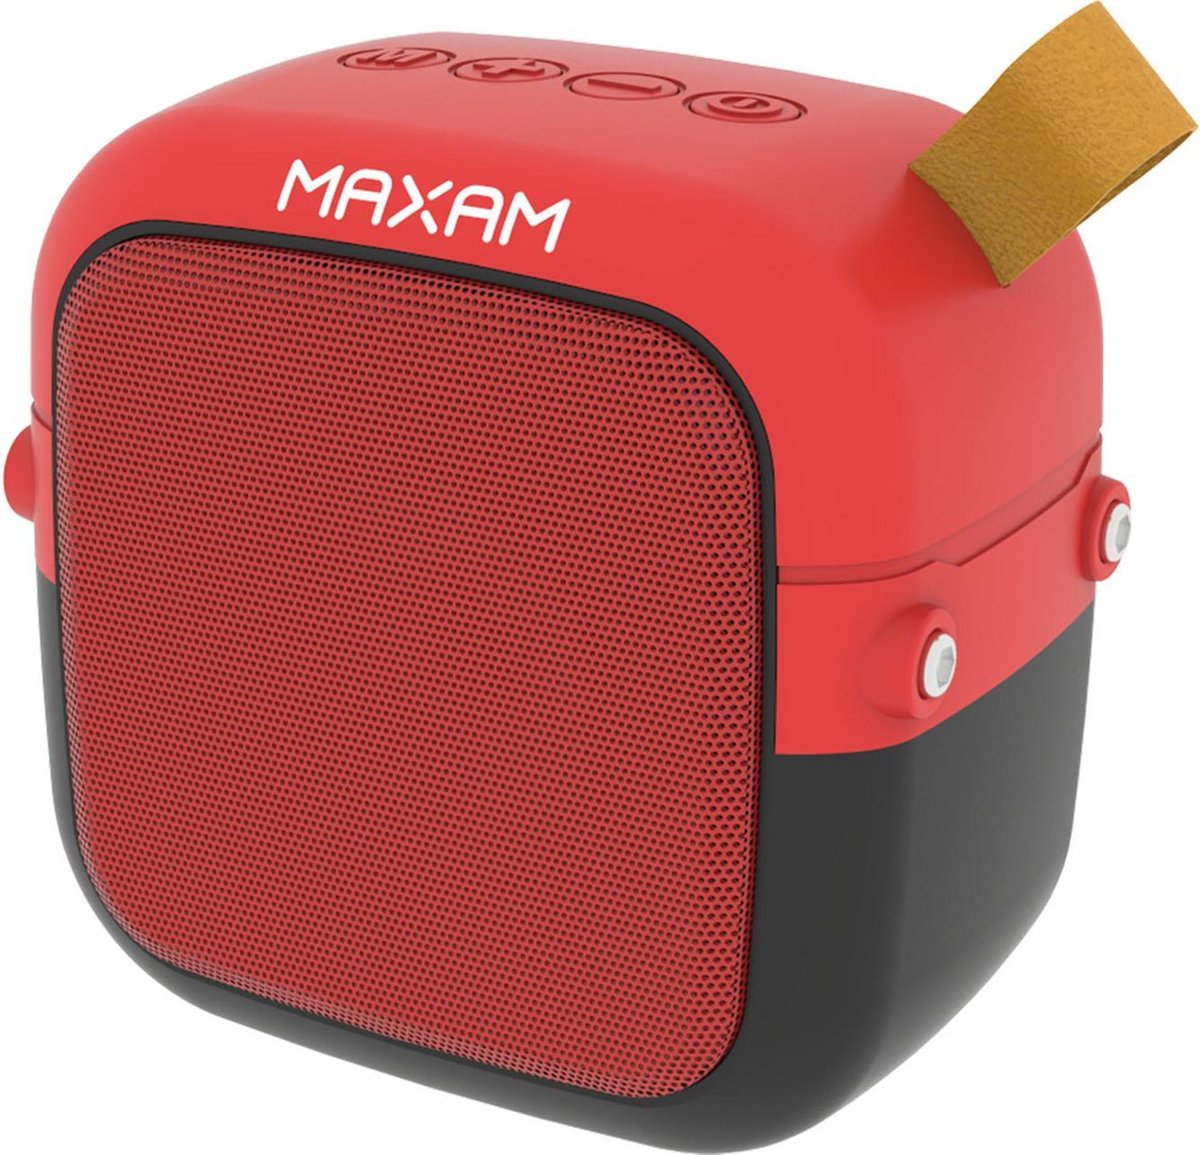 Maxam YX-B101 Draadloze Bluetooth Speaker - rood 3W/BASS